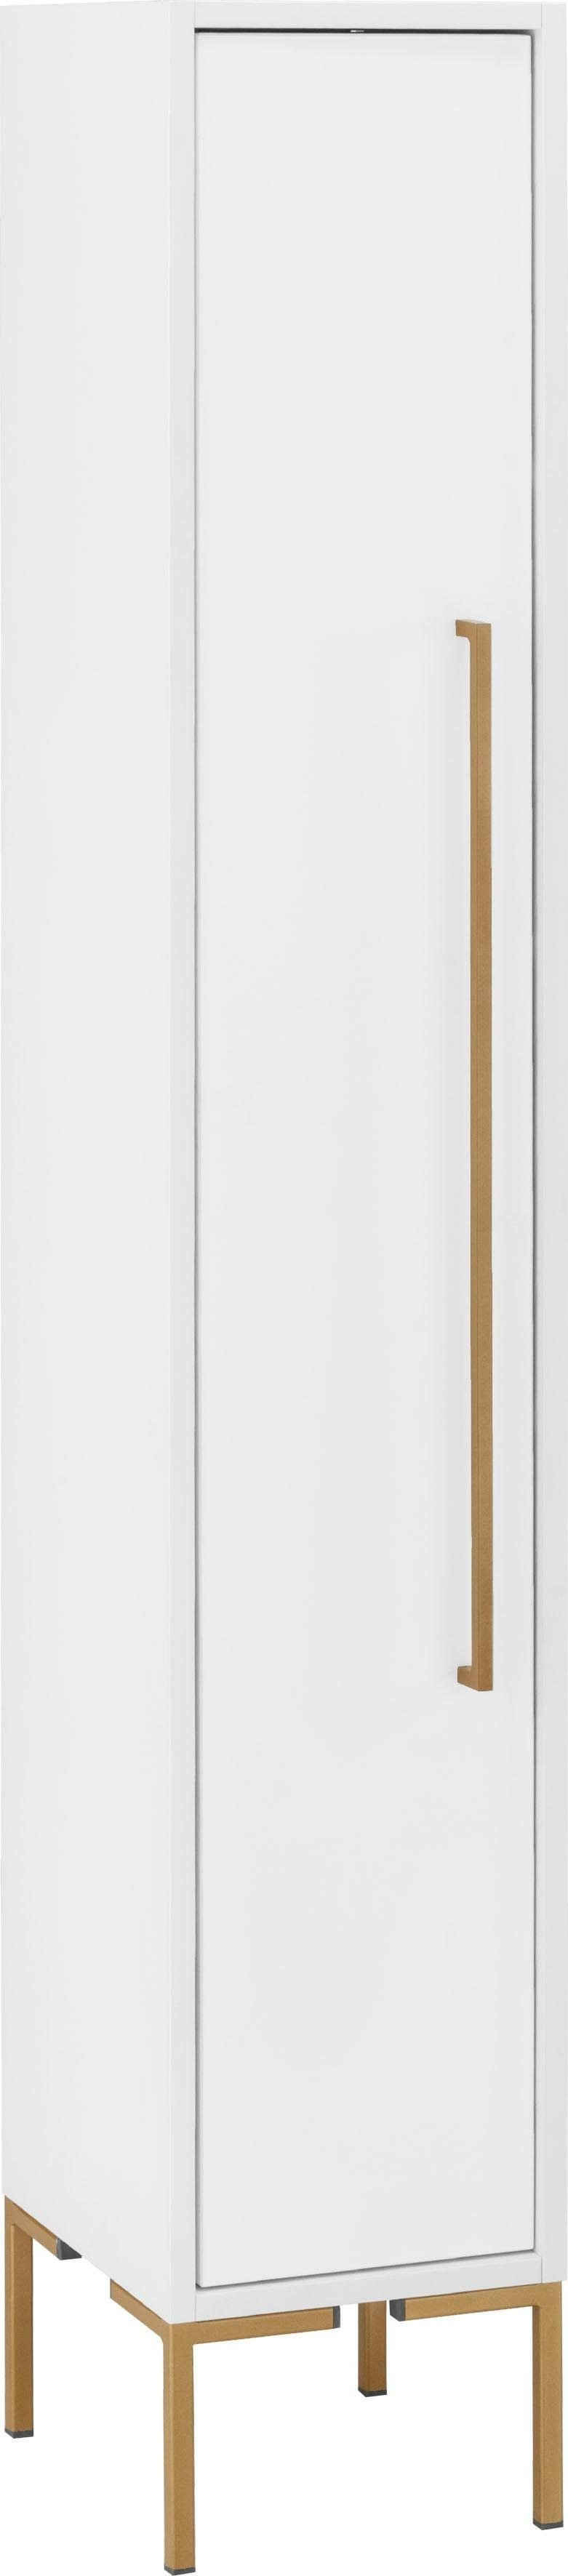 welltime Midischrank Marceau mit Soft-Close-Funktion und goldfarbenen Metallelementen